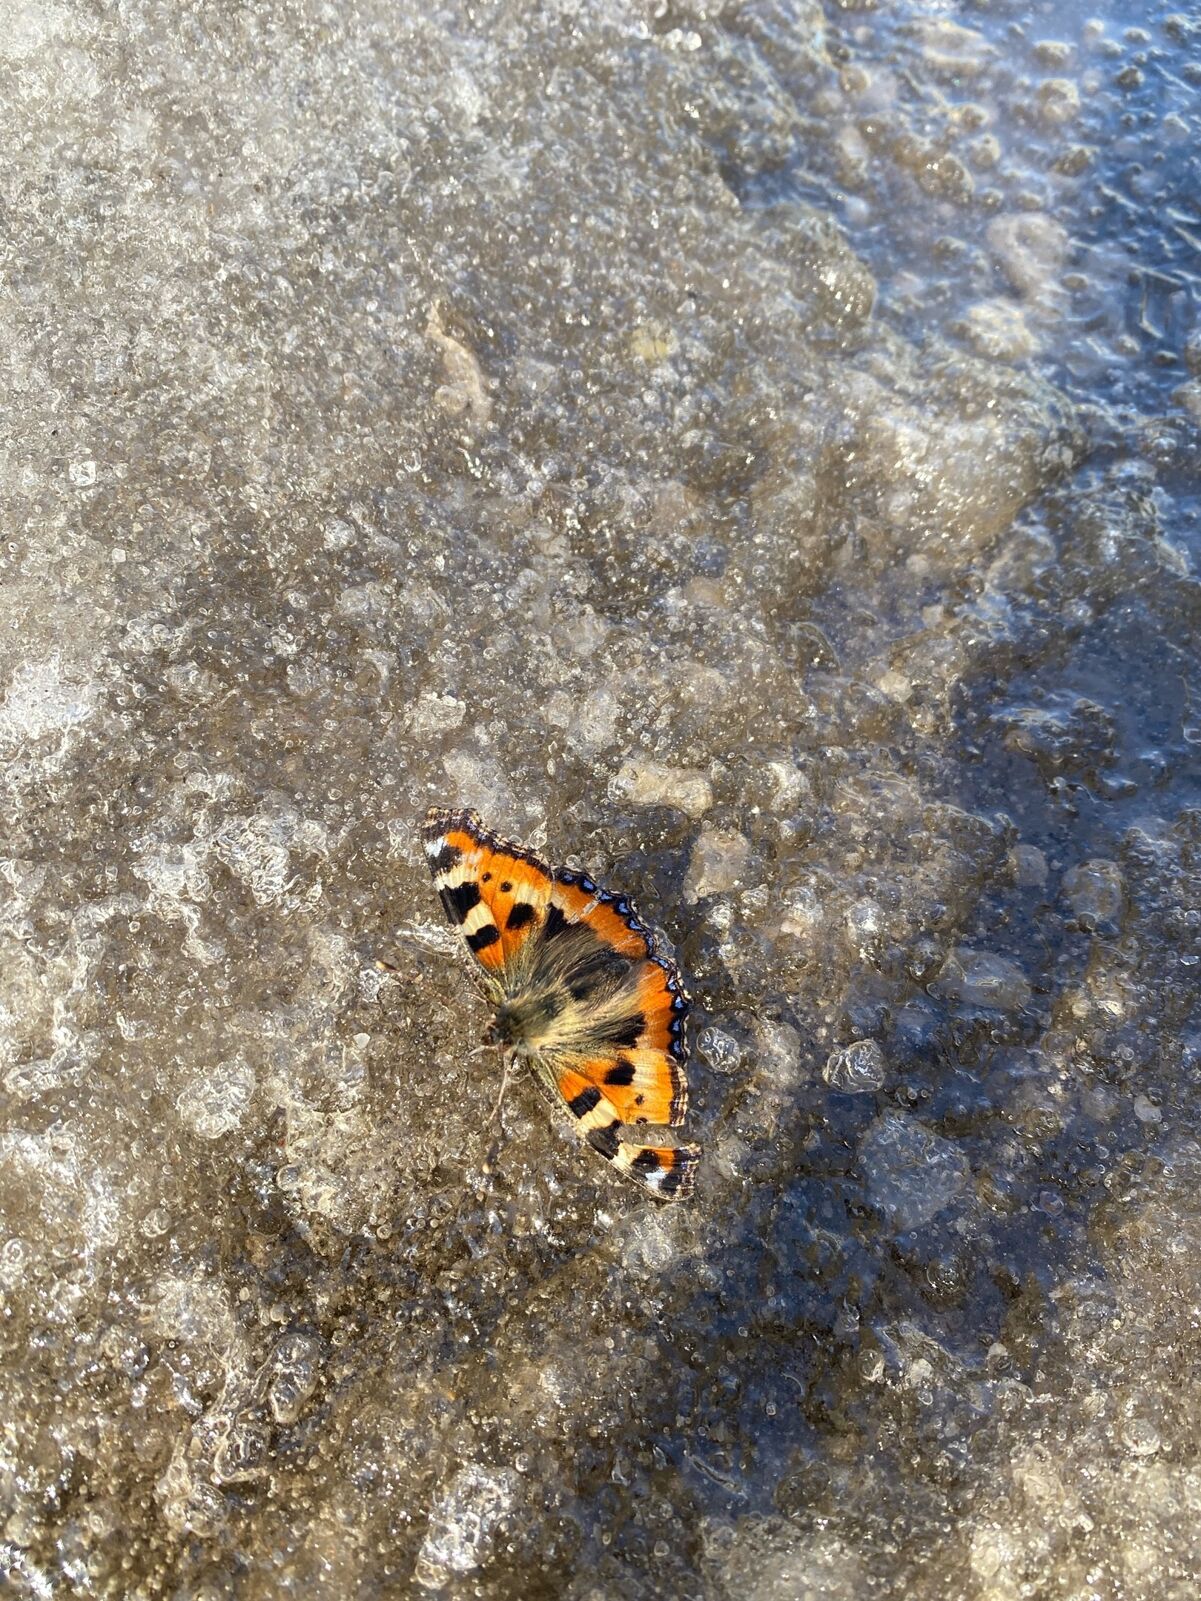 Бабочки и пчелы на снегу: ярославцы в сети делятся удивительными кадрами